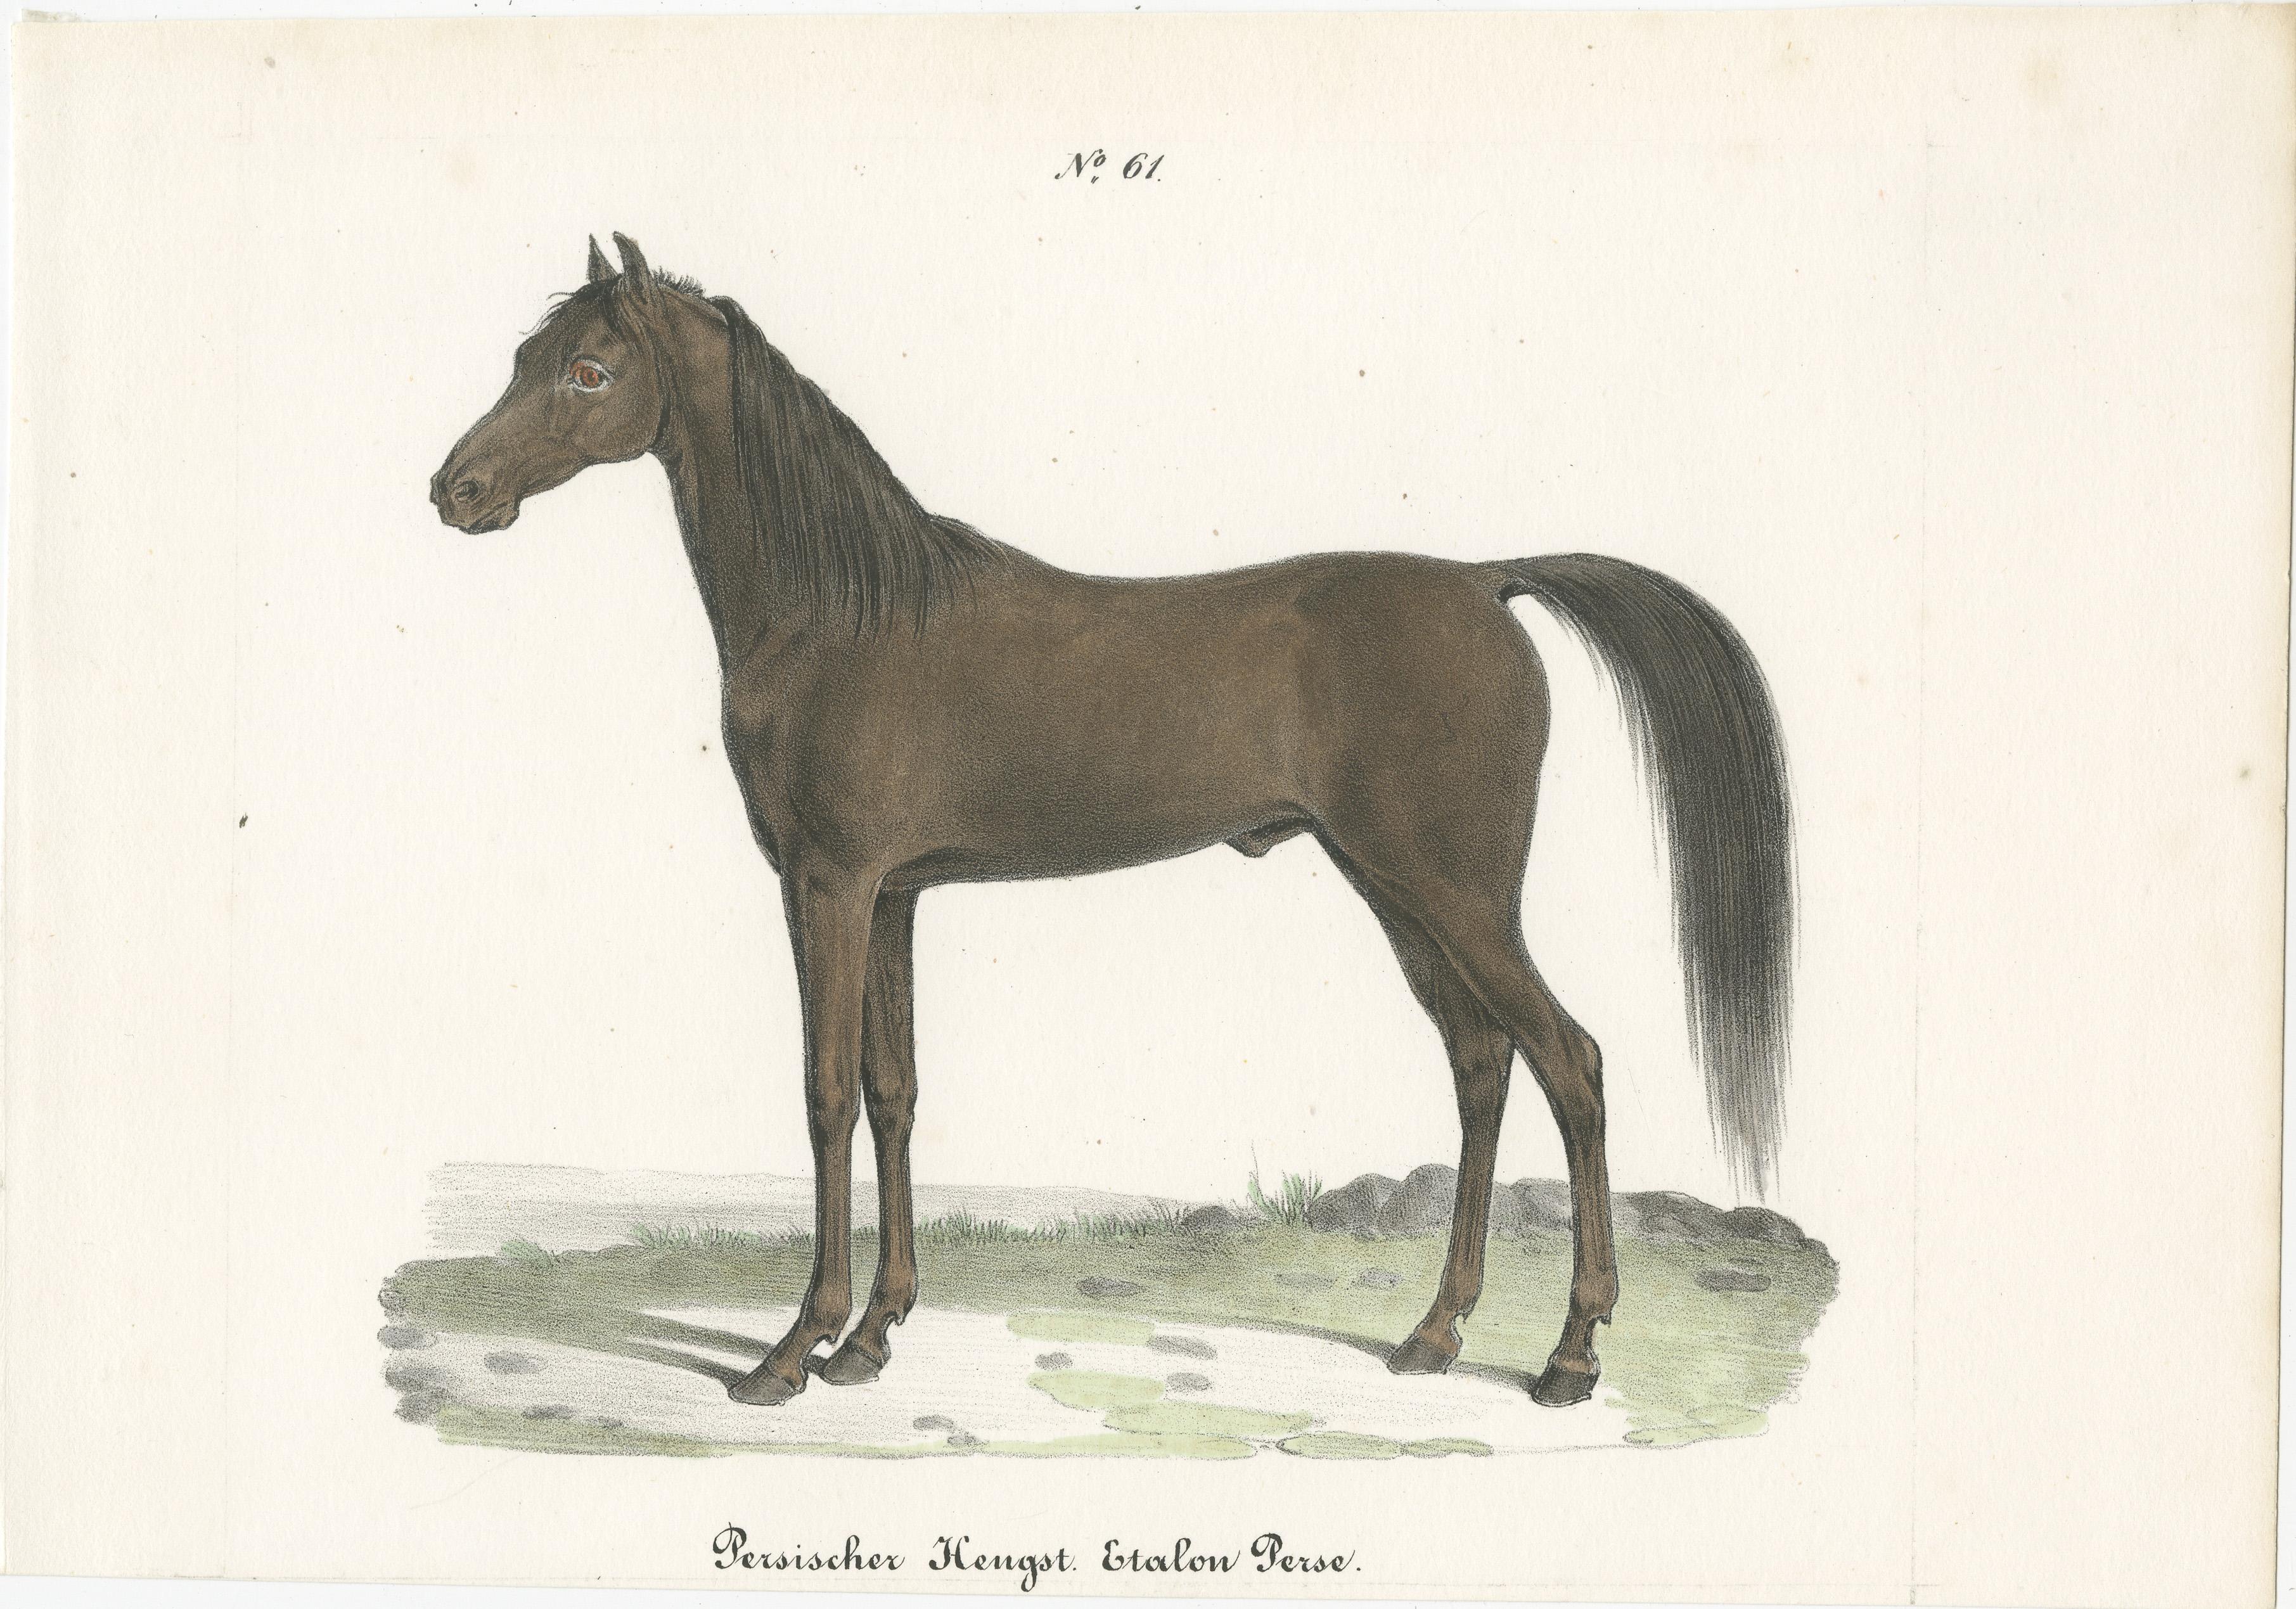 Antique print titled 'Persischer Hengst. Etalon Perse'. Old horse print of a Persian stallion. This print originates from 'Naturgeschichte Abbildungen der Sæugethiere' by Heinrich R. Schinz. Published 1827. This work on mammals was part of a series